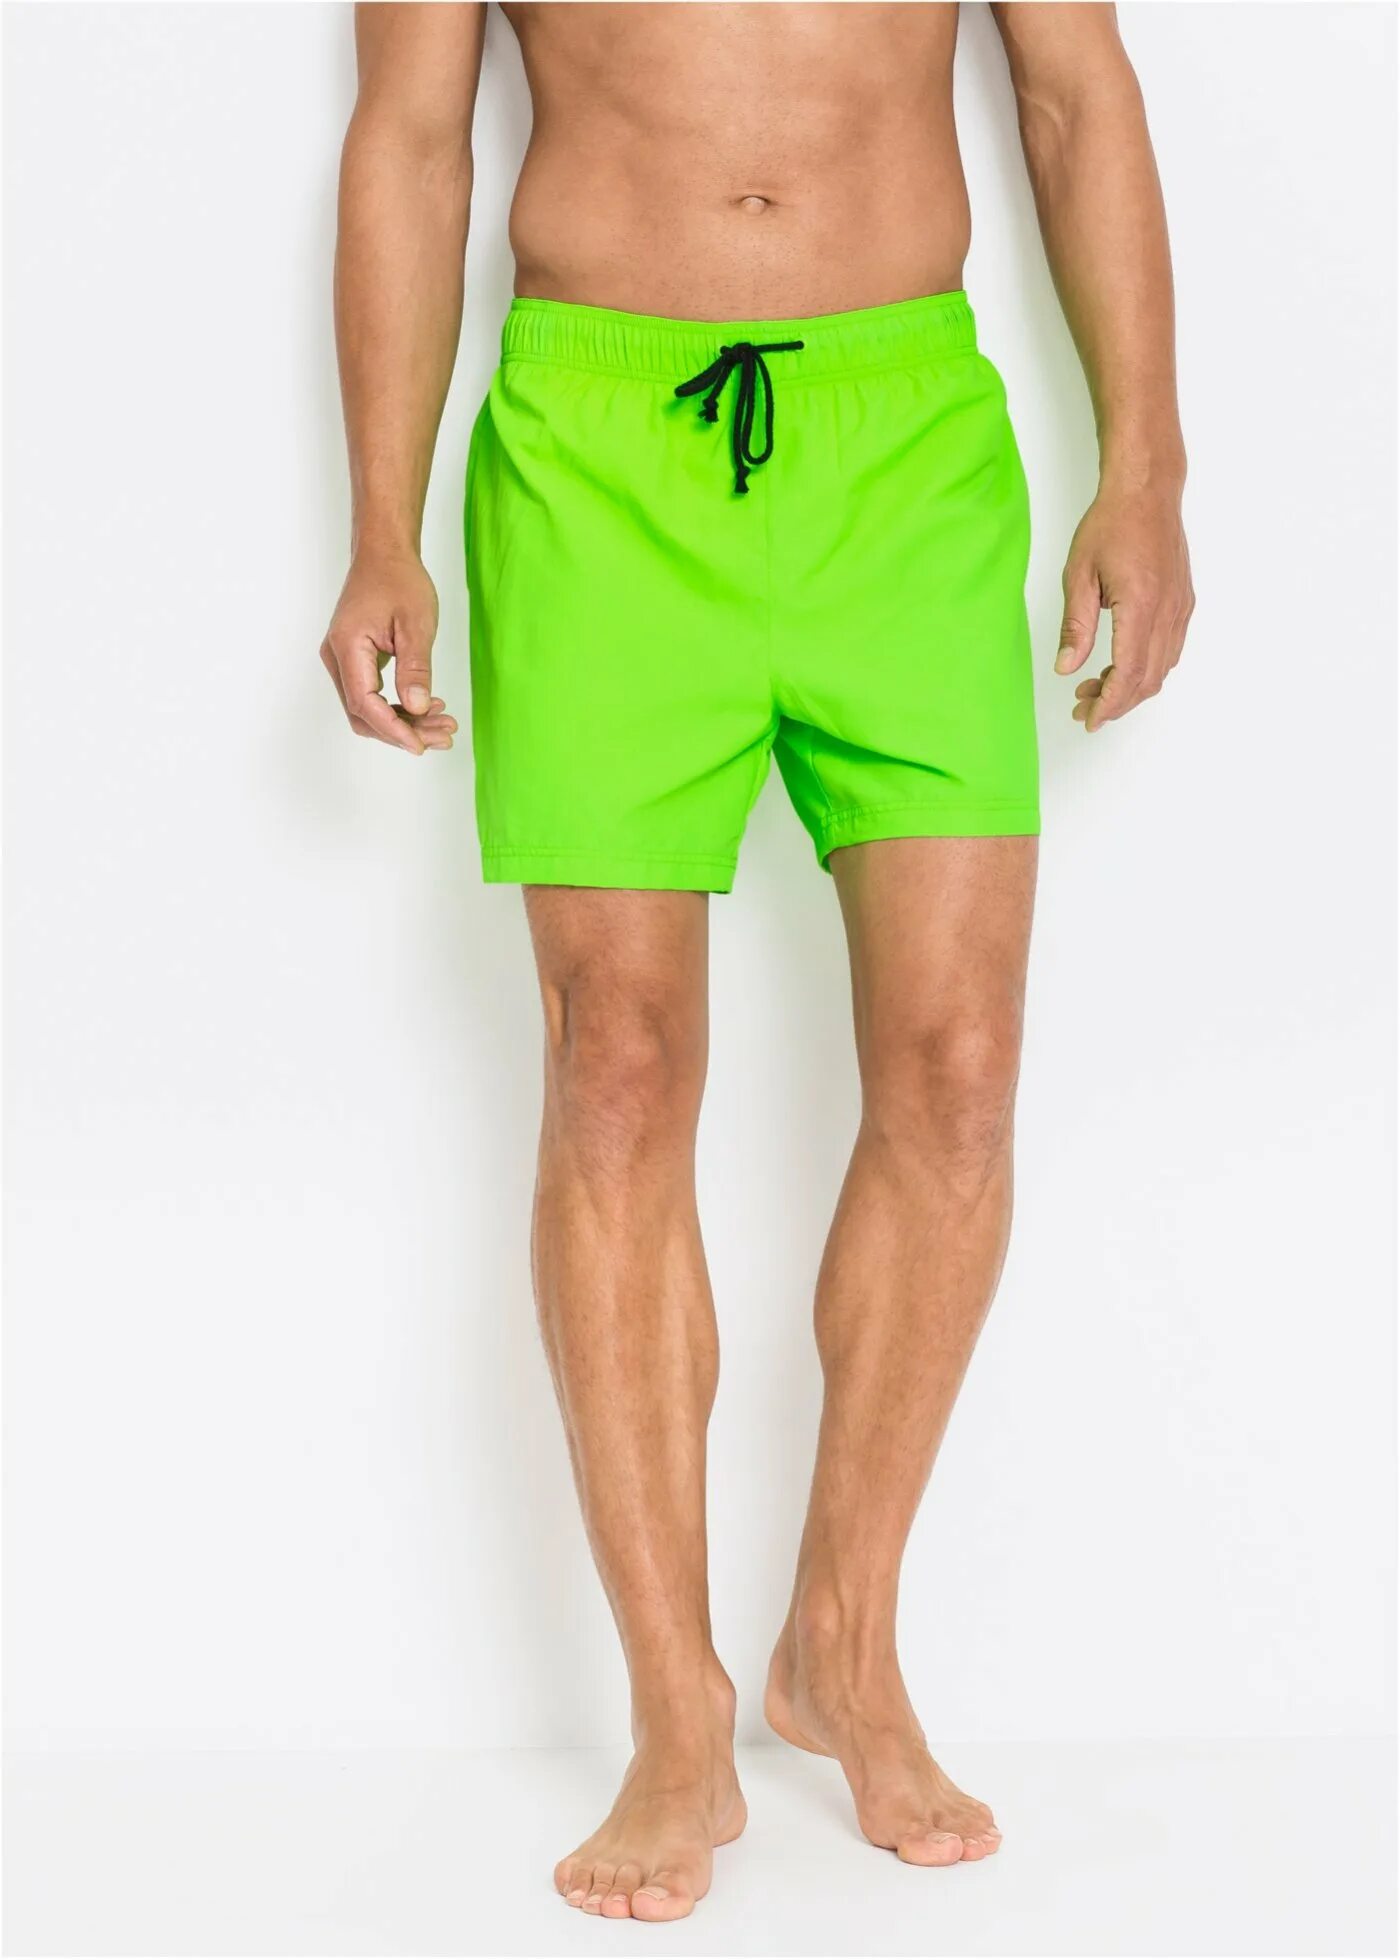 Мужские шорты Reem-Fit зеленые. Шорты мужские Emerson Mastiff Training shorts Green. Шорты плавательные Mexx Neon Yellow. Puma XTG шорты мужские салатовый.